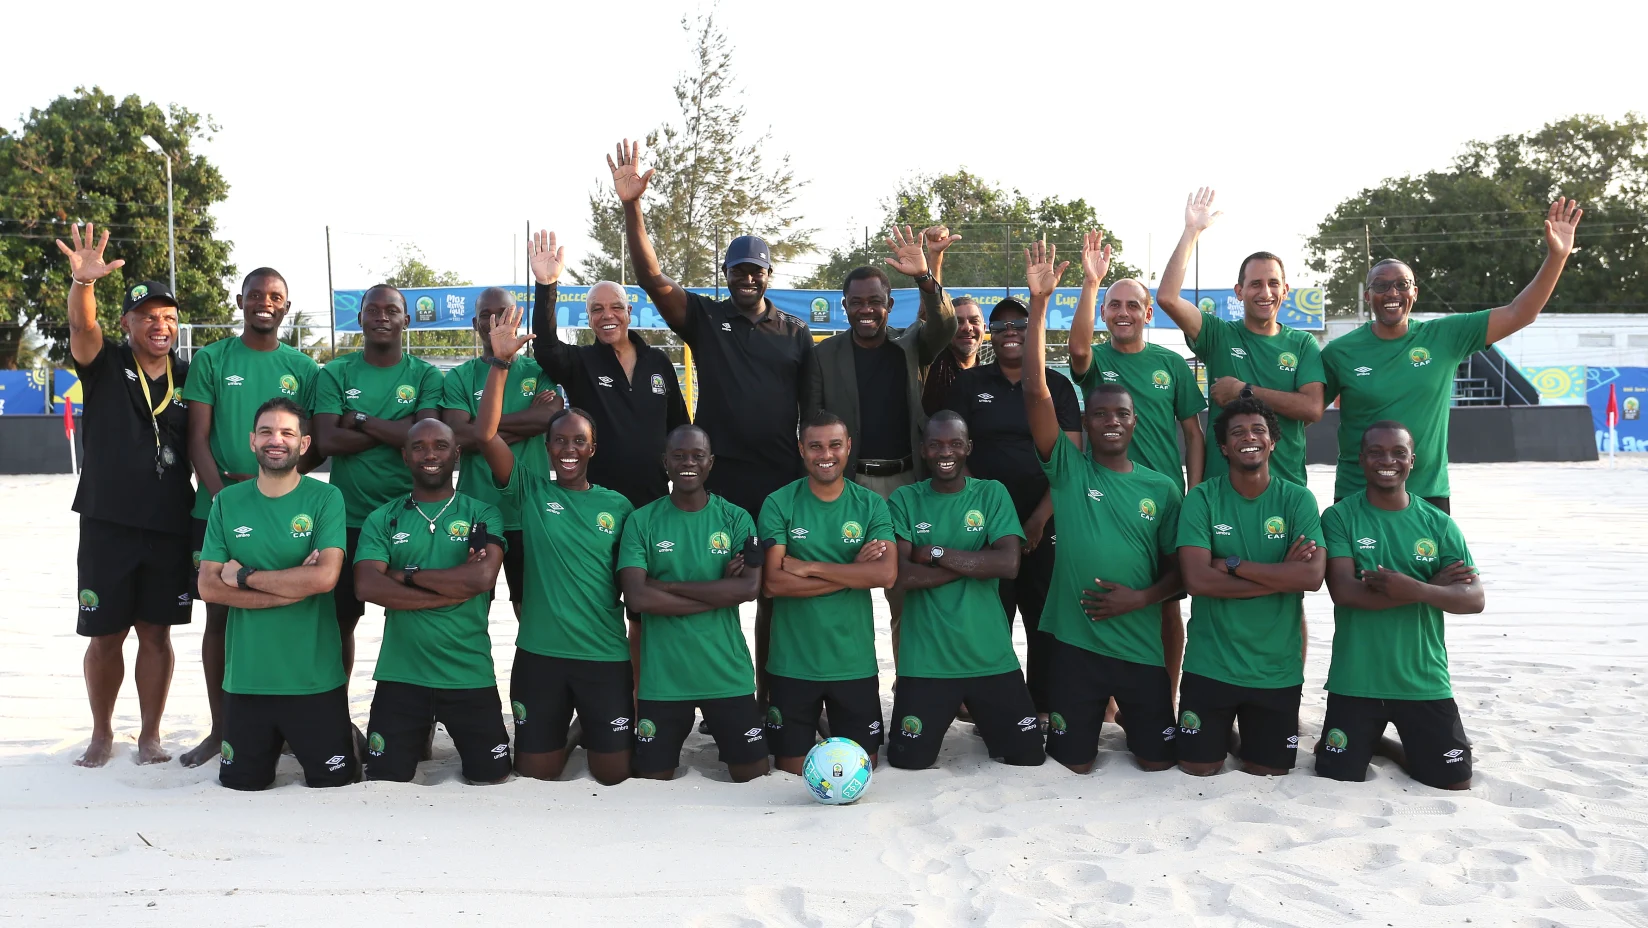 إنطلاق بطولة كأس الأمم الأفريقية للكرة الشاطئية اليوم في منتجع فيلانكولو موزمبيق 2022